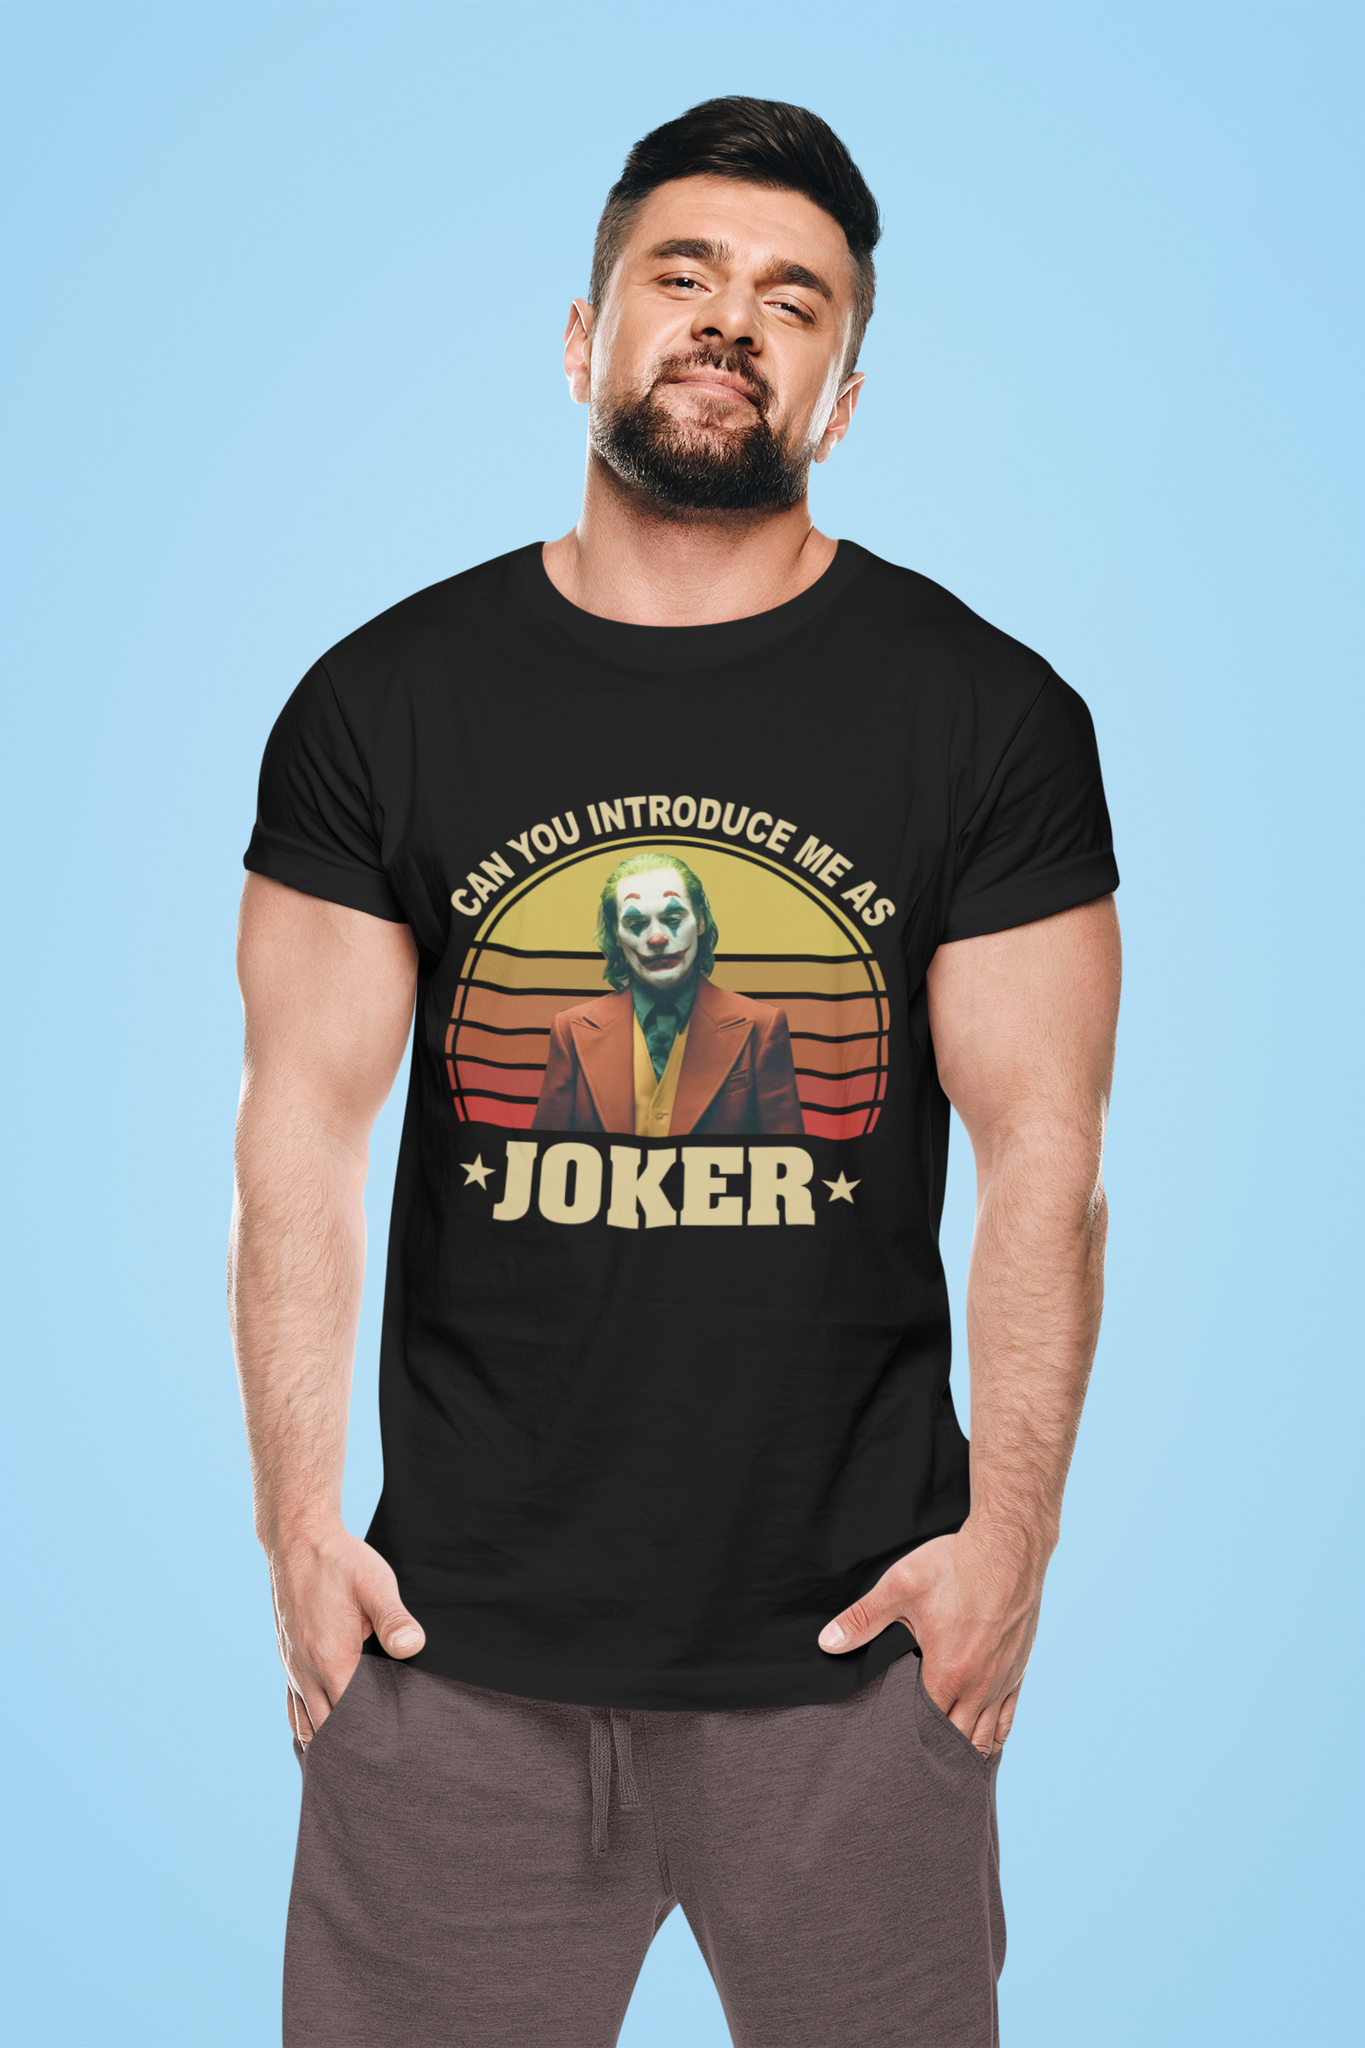 Joker Vintage T Shirt, Joker The Comedian Tshirt, Can You Introduce Me As Joker Shirt, Halloween Gifts